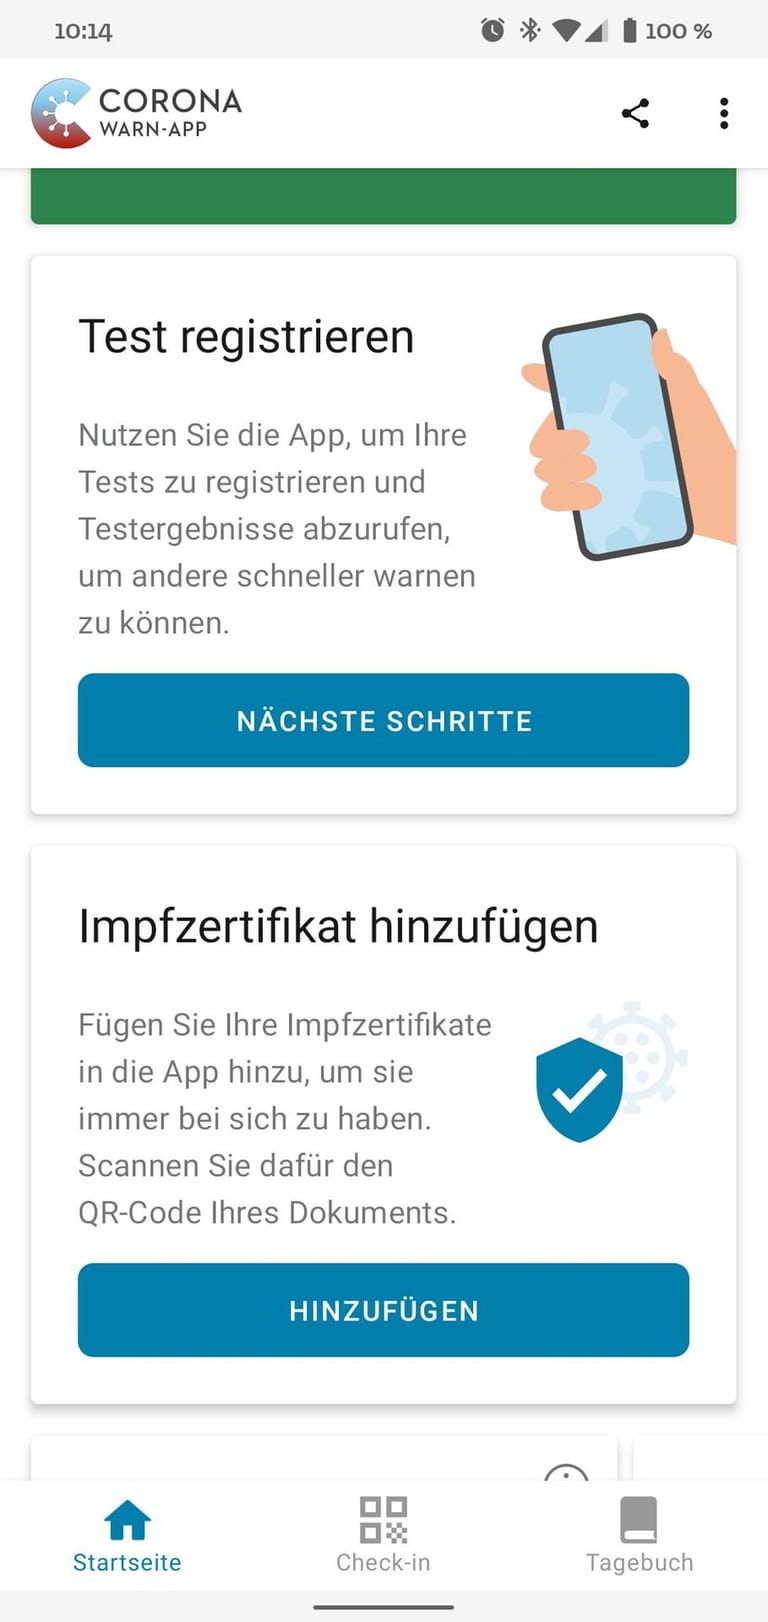 Die Funktion findet sich auf der Startseite der App unter "Impfzertifikat hinzufügen". Klickt man darauf, startet der QR-Code-Scanner.